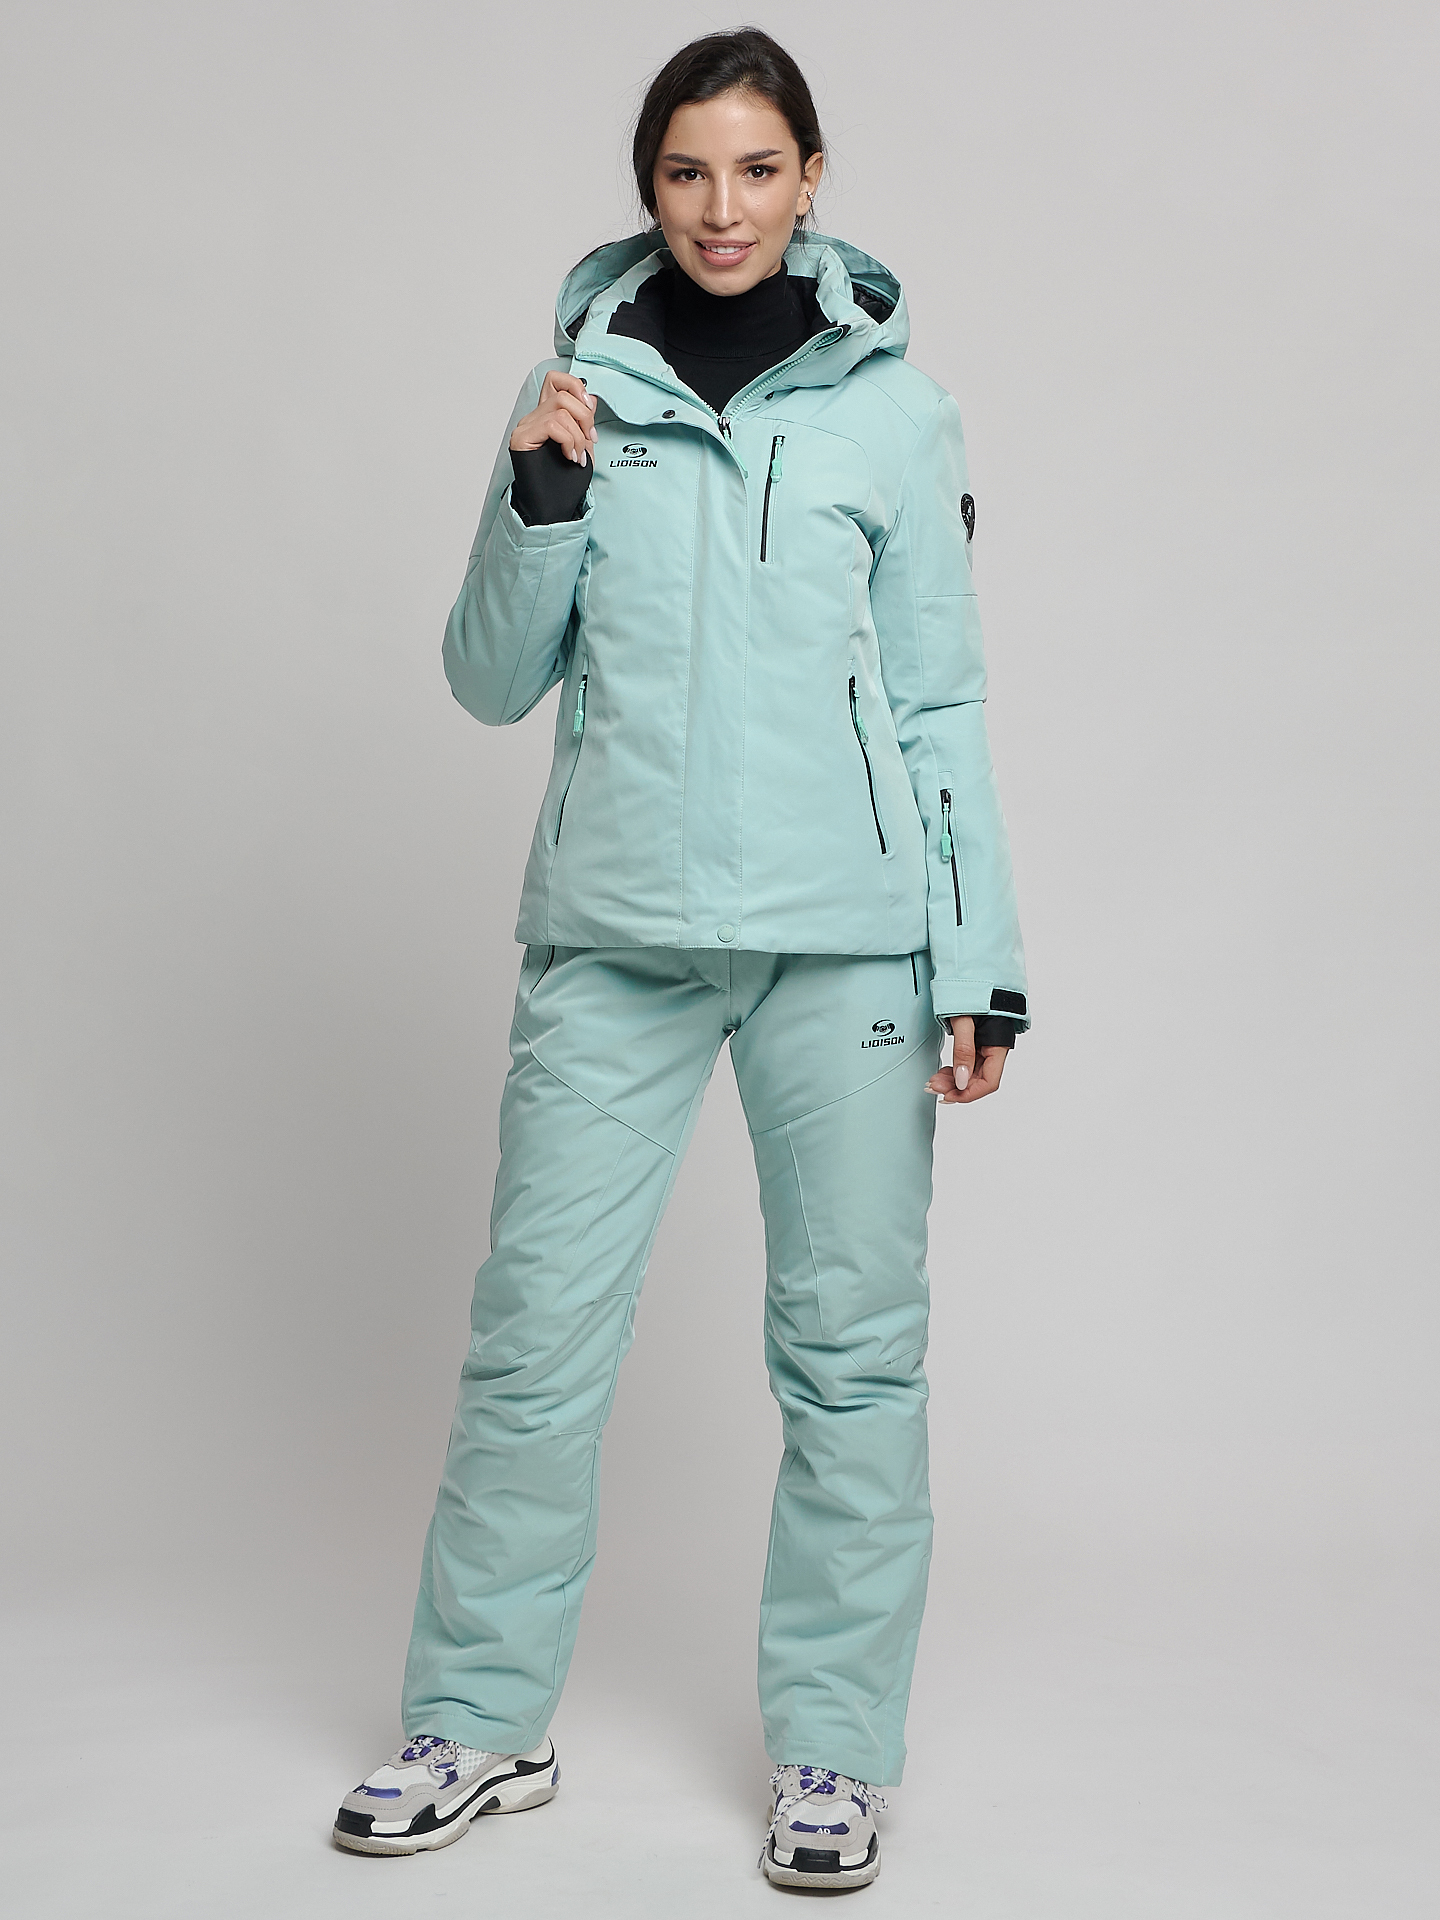 Купить горнолыжный костюм женский от производителя в Москве дешево 077039Br